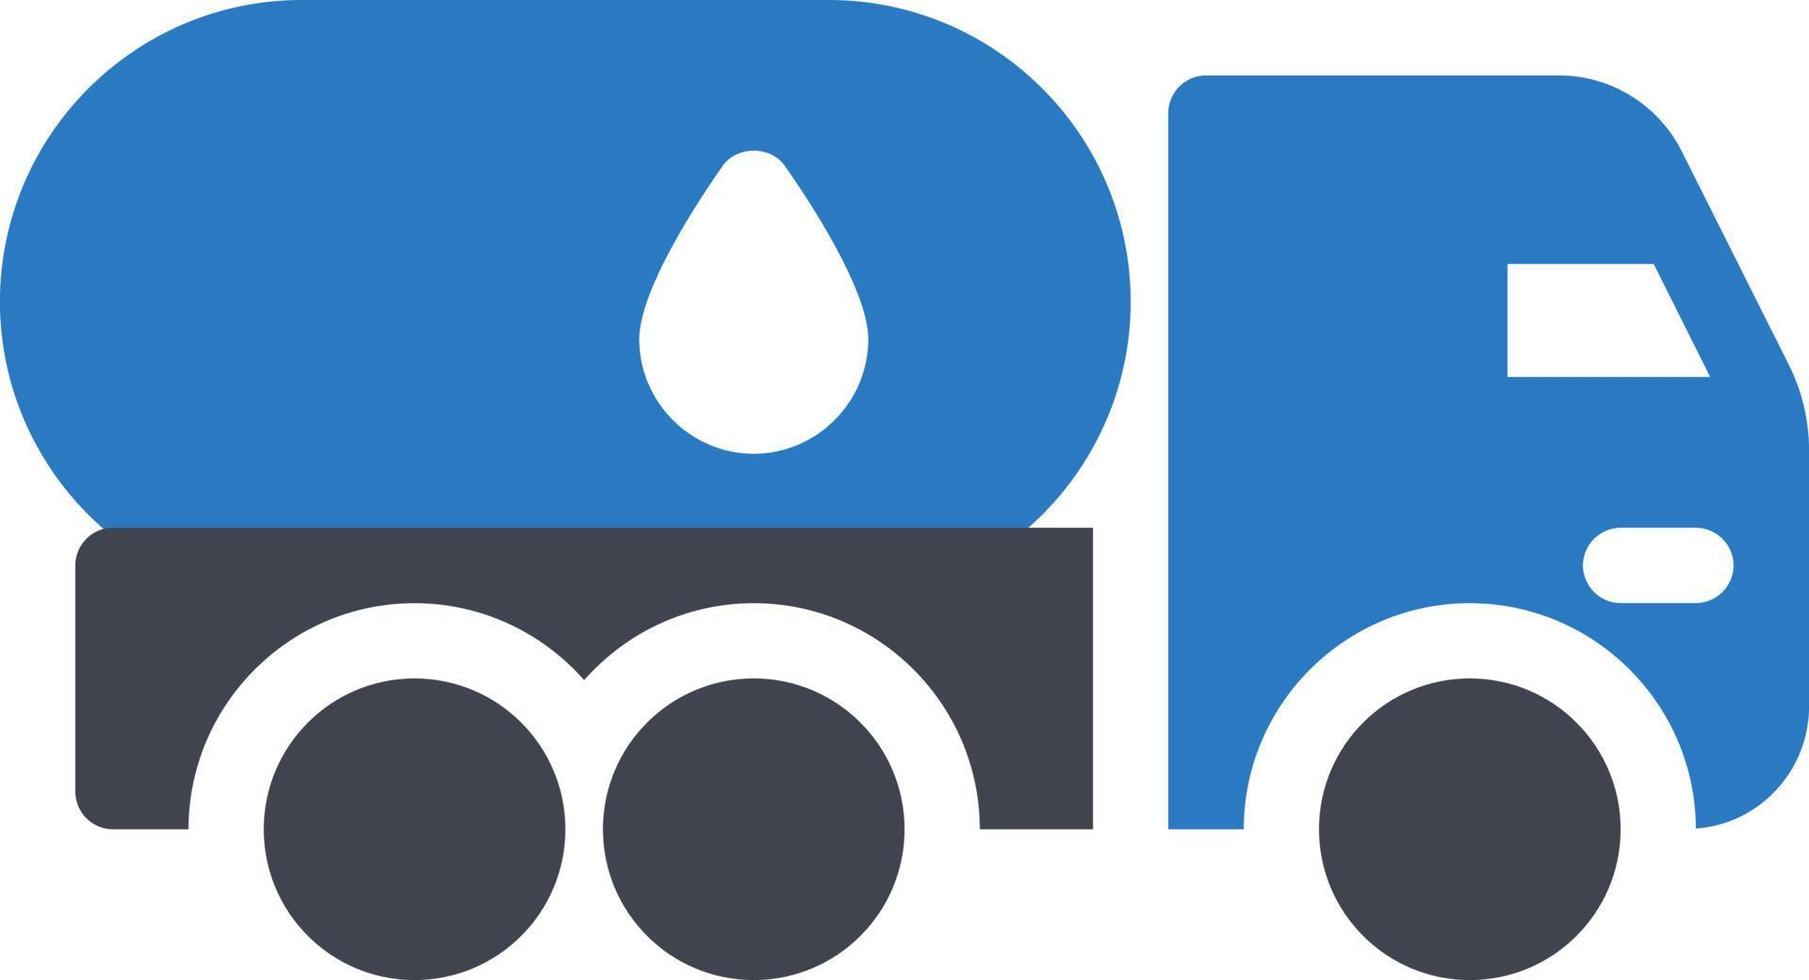 illustrazione vettoriale della petroliera su uno sfondo simboli di qualità premium icone vettoriali per il concetto e la progettazione grafica.